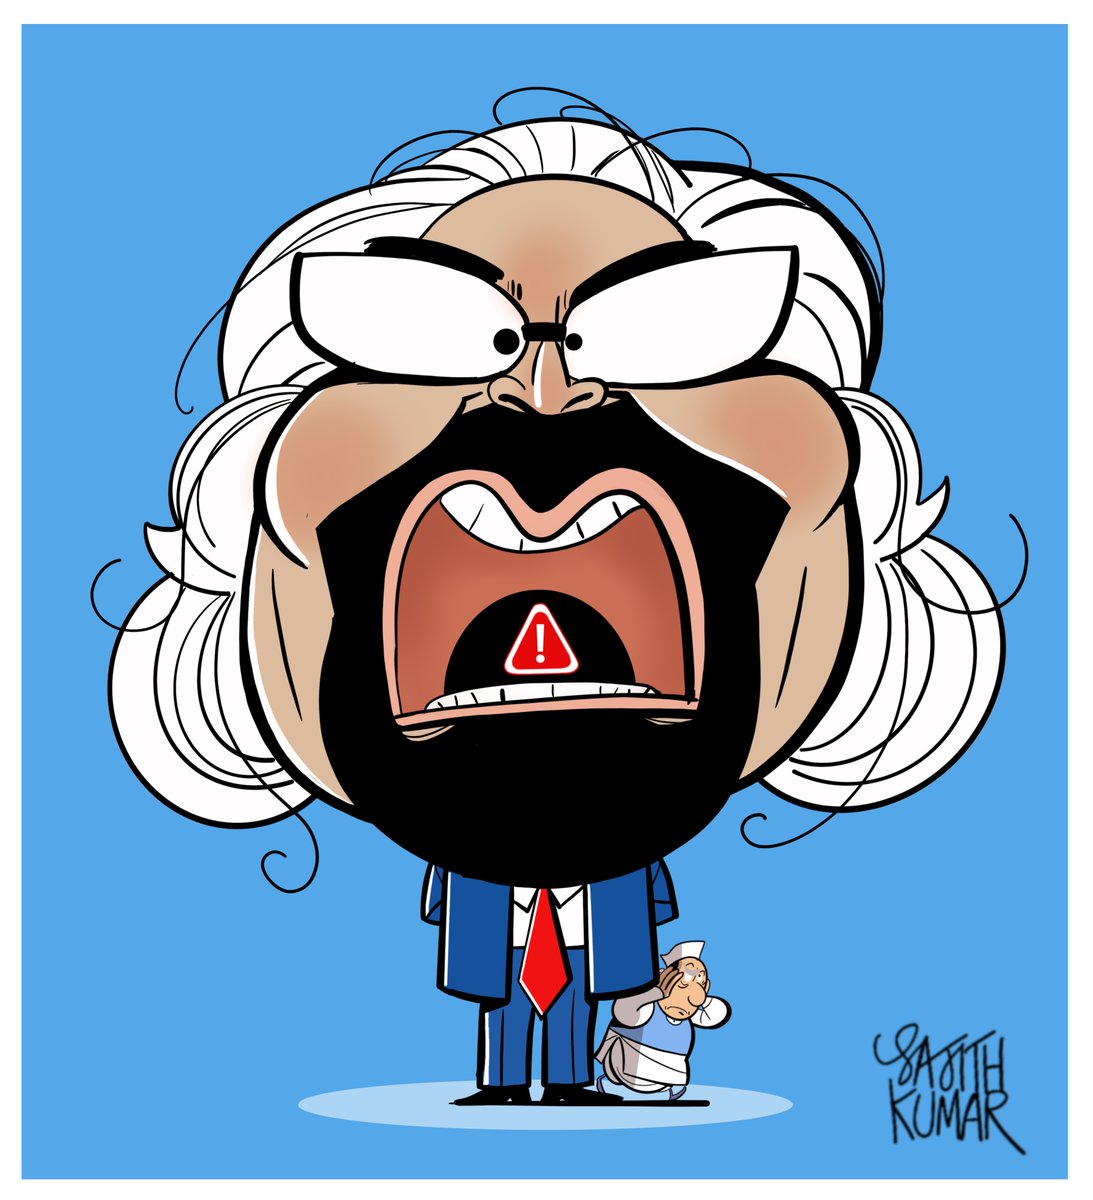 #SamPitrodaStrikesAgain caricature @DeccanHerald